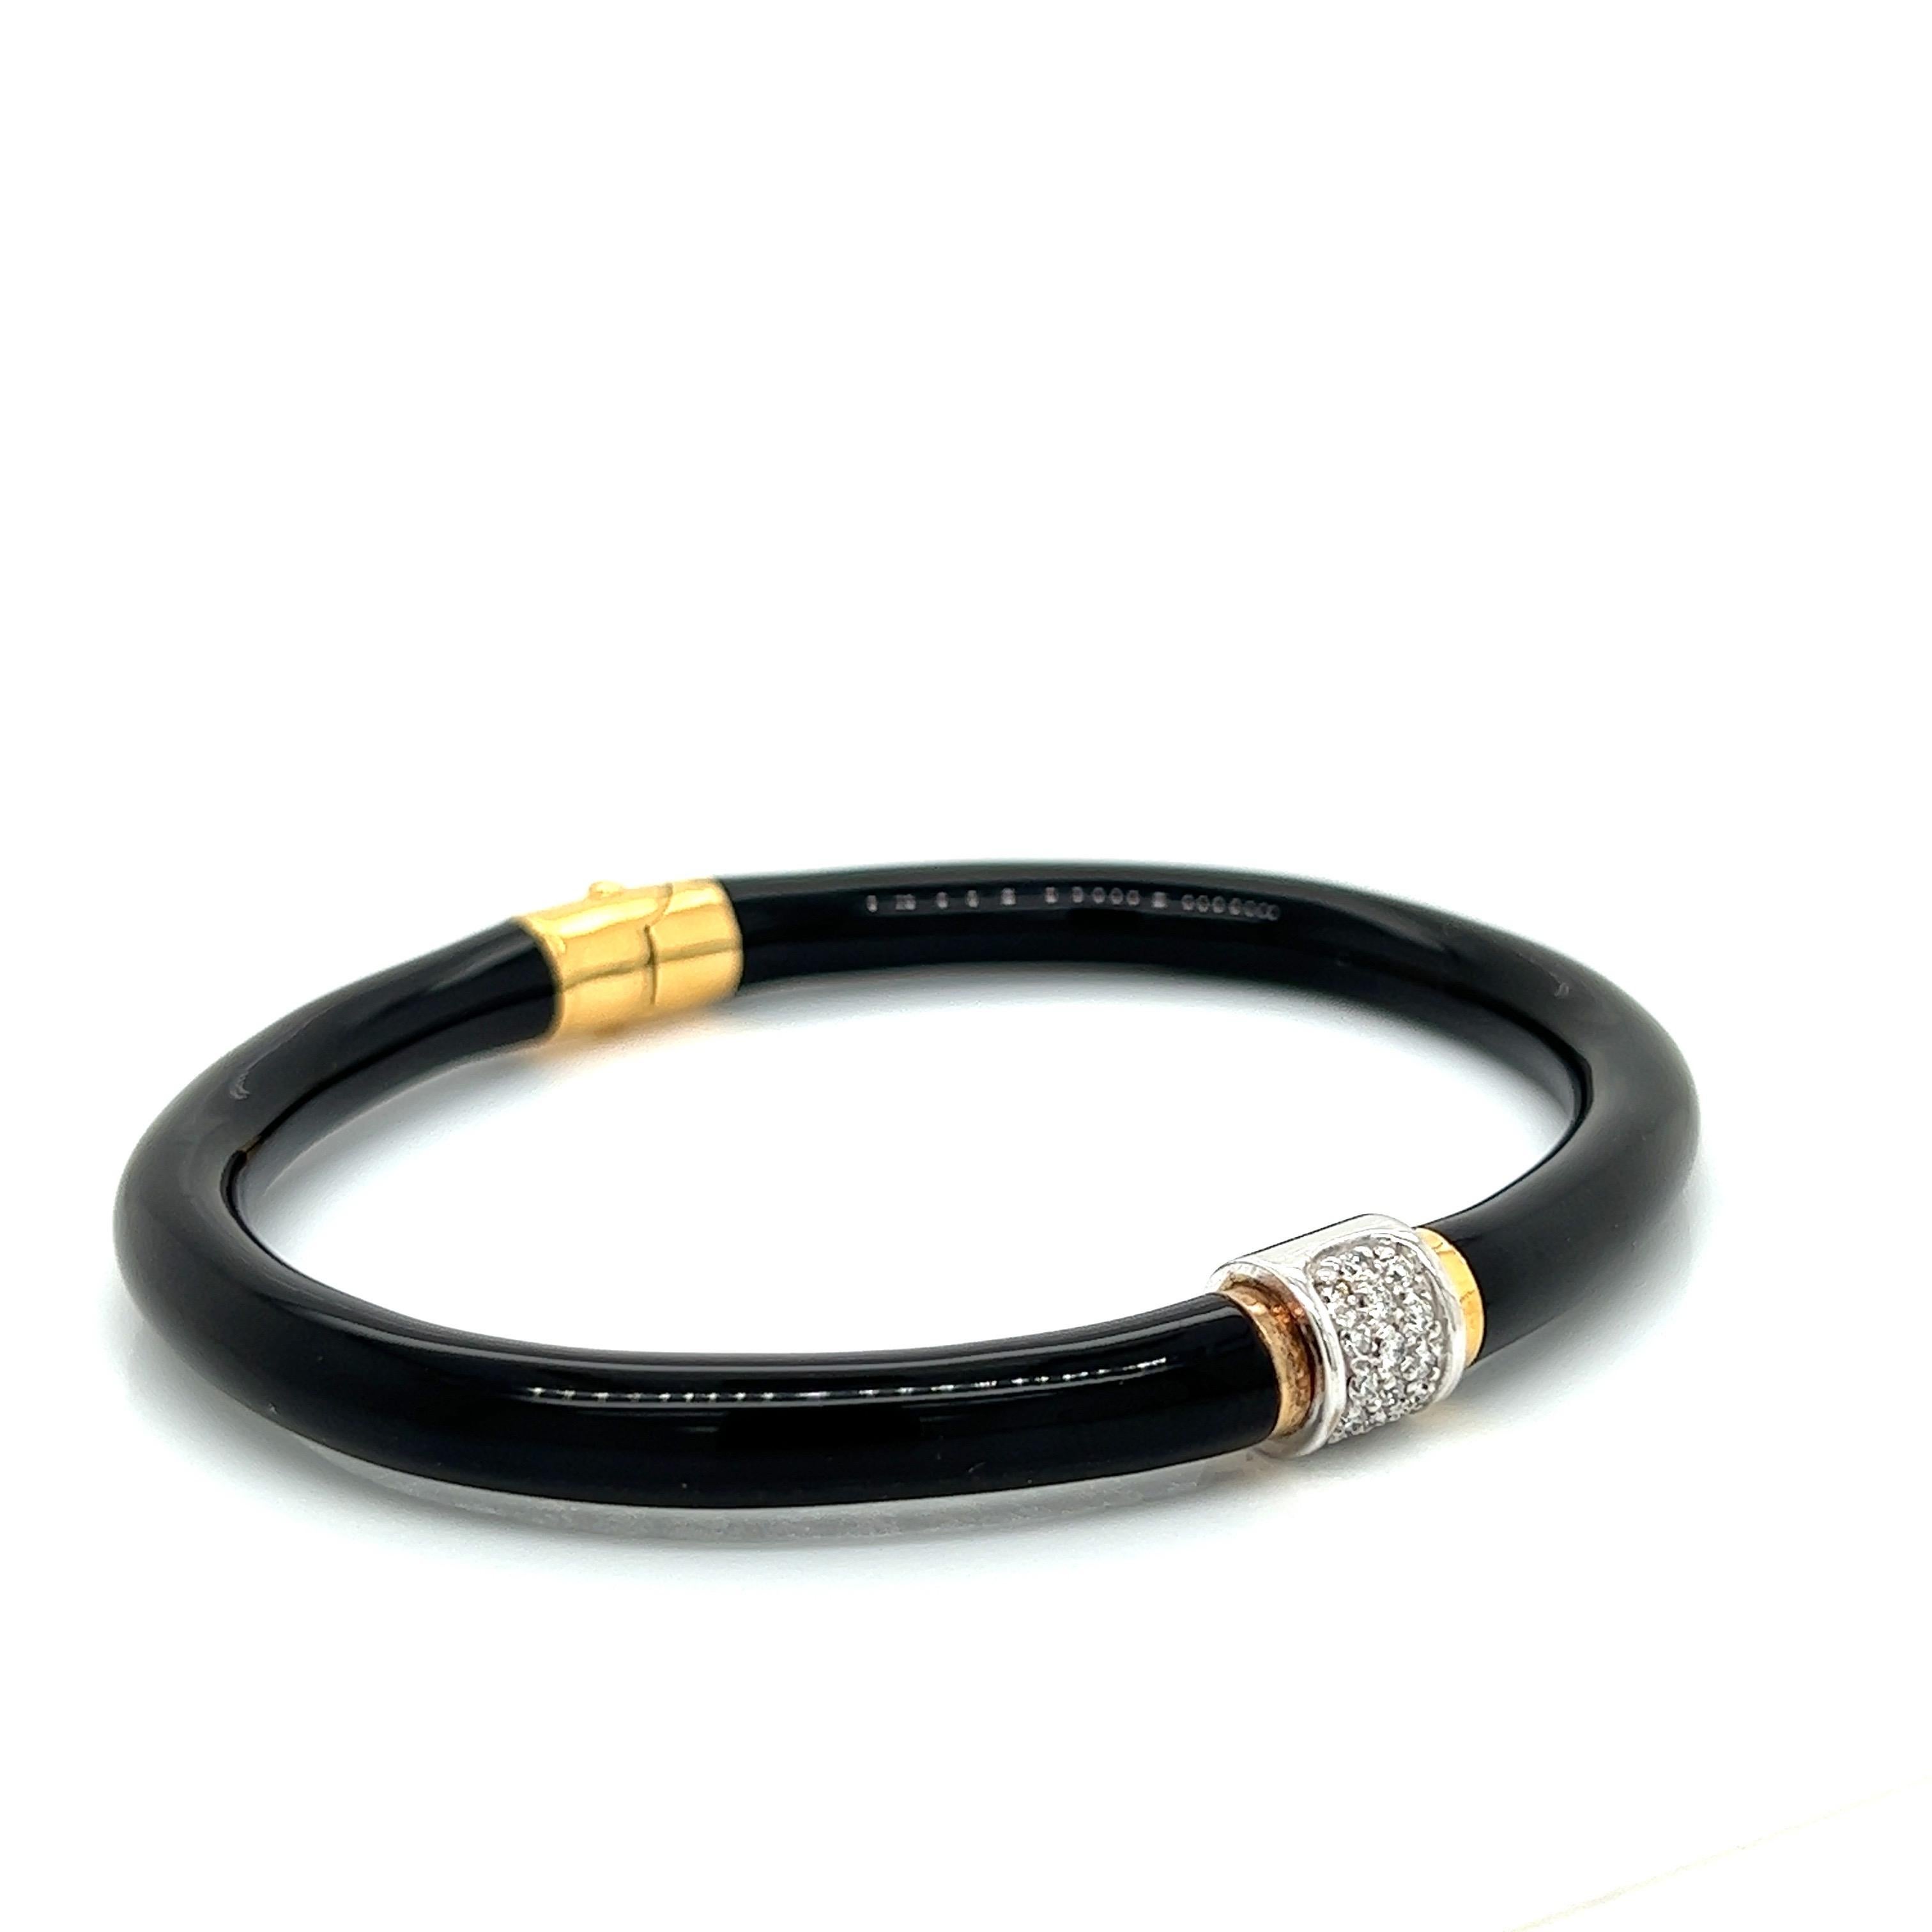 Le bracelet noir et or de SOHO est fabriqué à la main en Italie. Ce bracelet à la fois traditionnel et moderne est en or blanc et jaune de 18kt, en émail et en diamants de 0,15 ctw. Le bracelet de 4 mm de large est doté d'une charnière cachée sur le